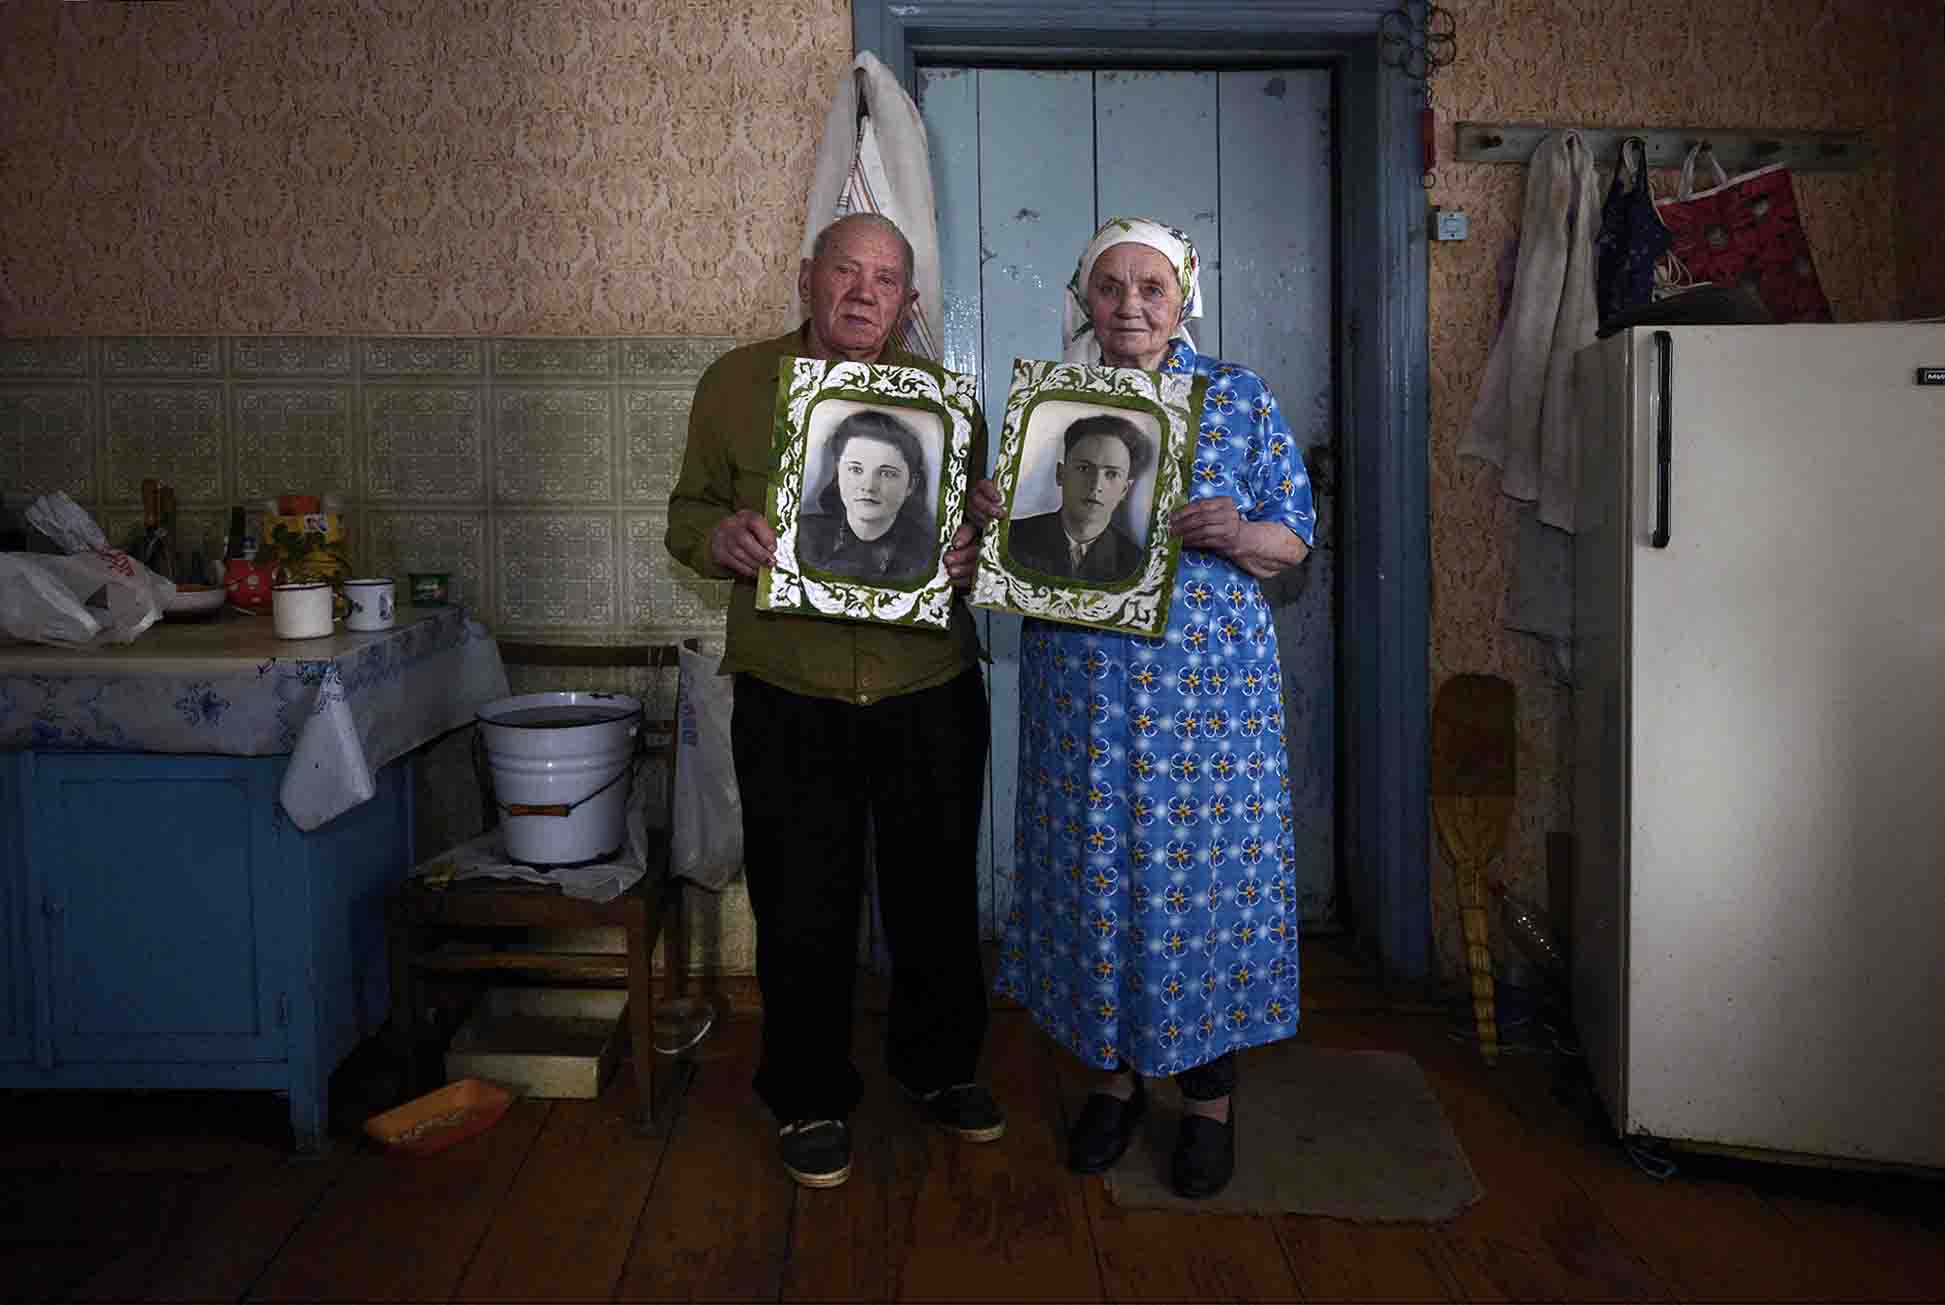 Iván y Vera Shilets viven en Krasniahia a 40 kilómetros de Chernóbil, permanecieron en su hogar tras el accidente. Iván trabajaba en una granja estatal / Foto: Alfons Rodríguez